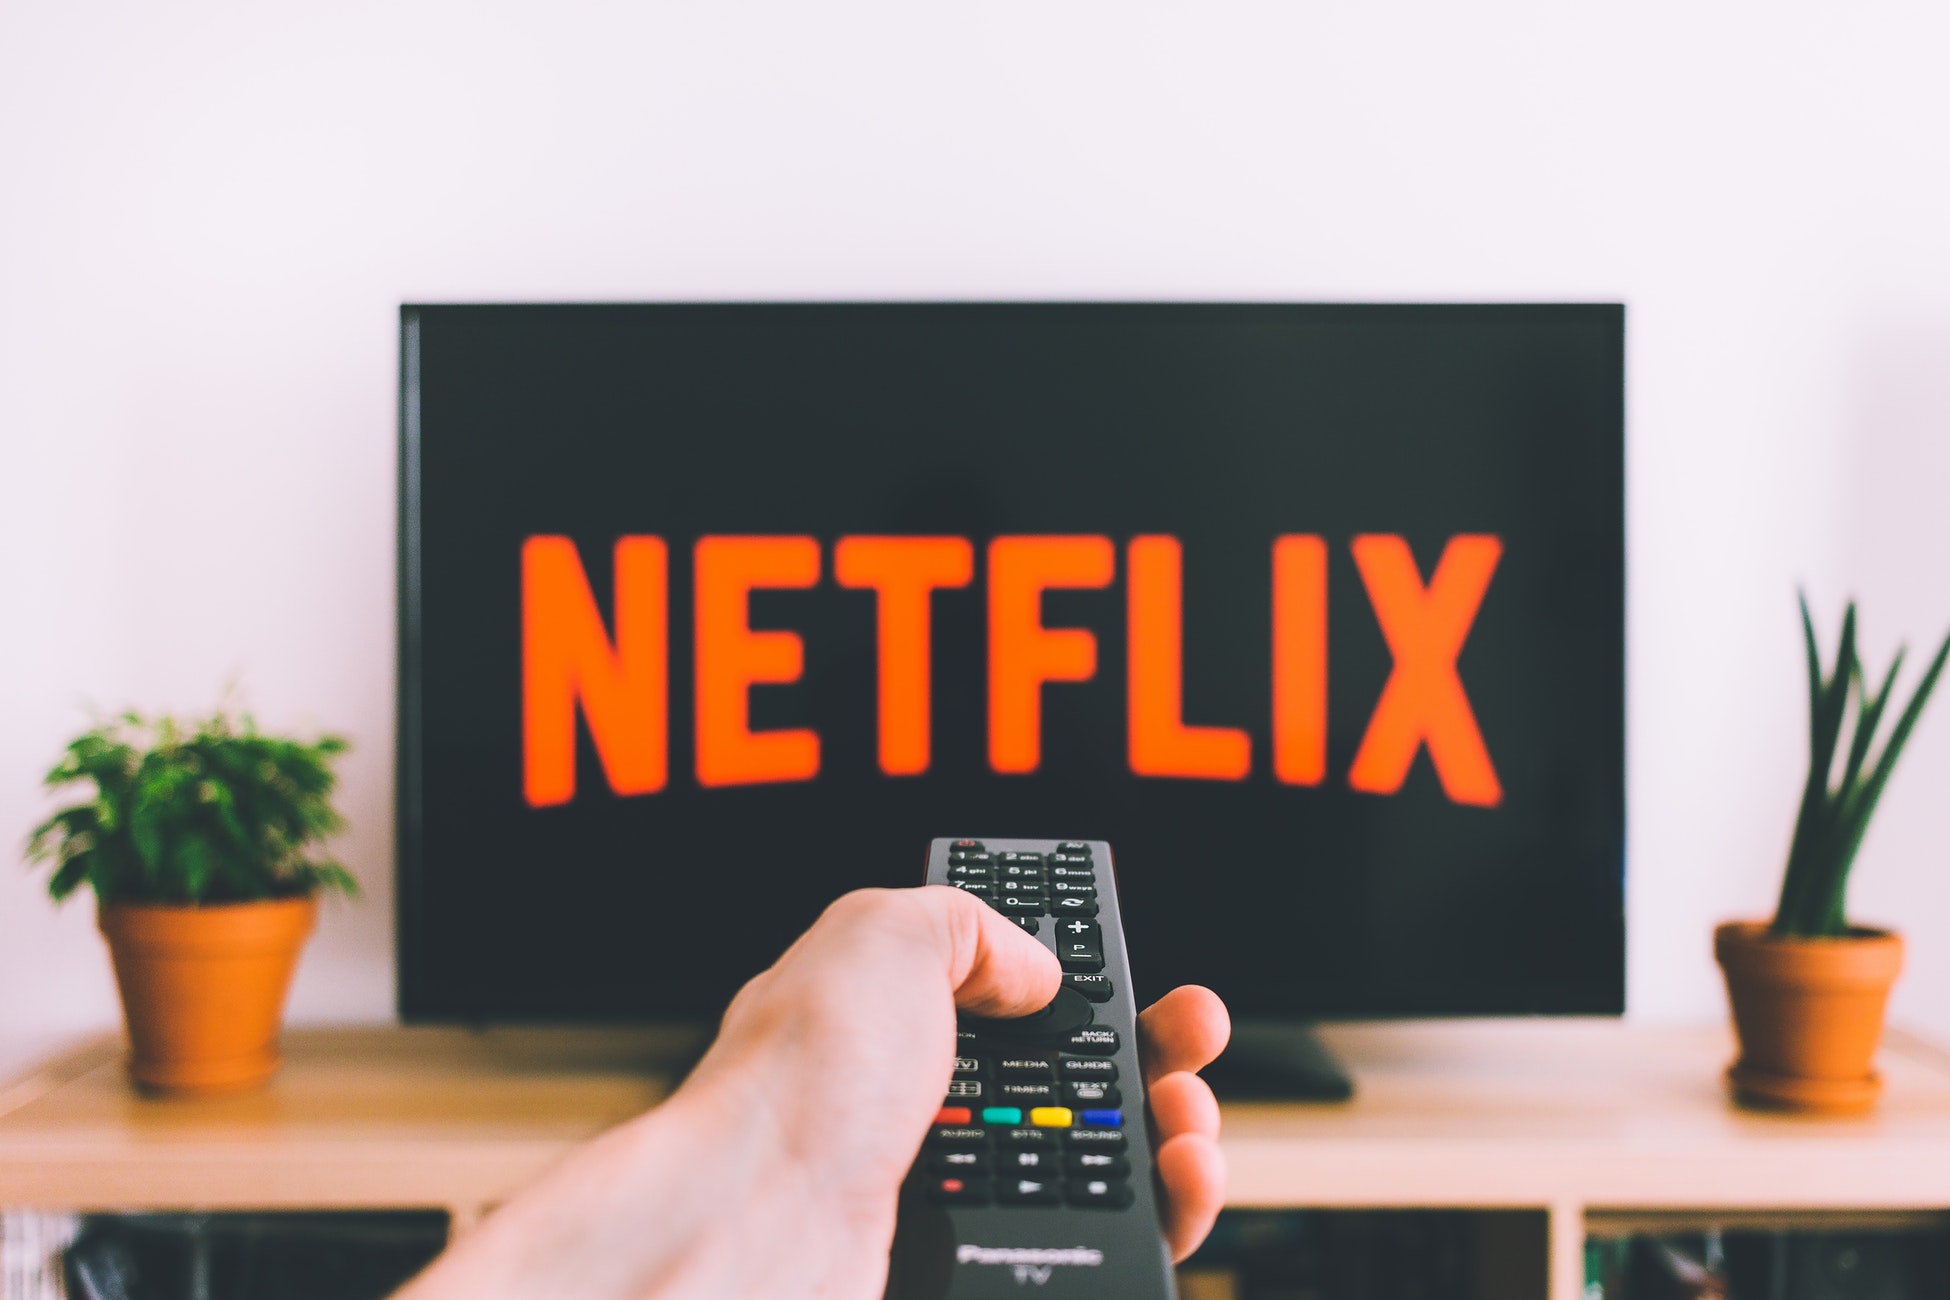 Netflix Kini Mempunyai Lebih 182 Juta Pelanggan Berbayar